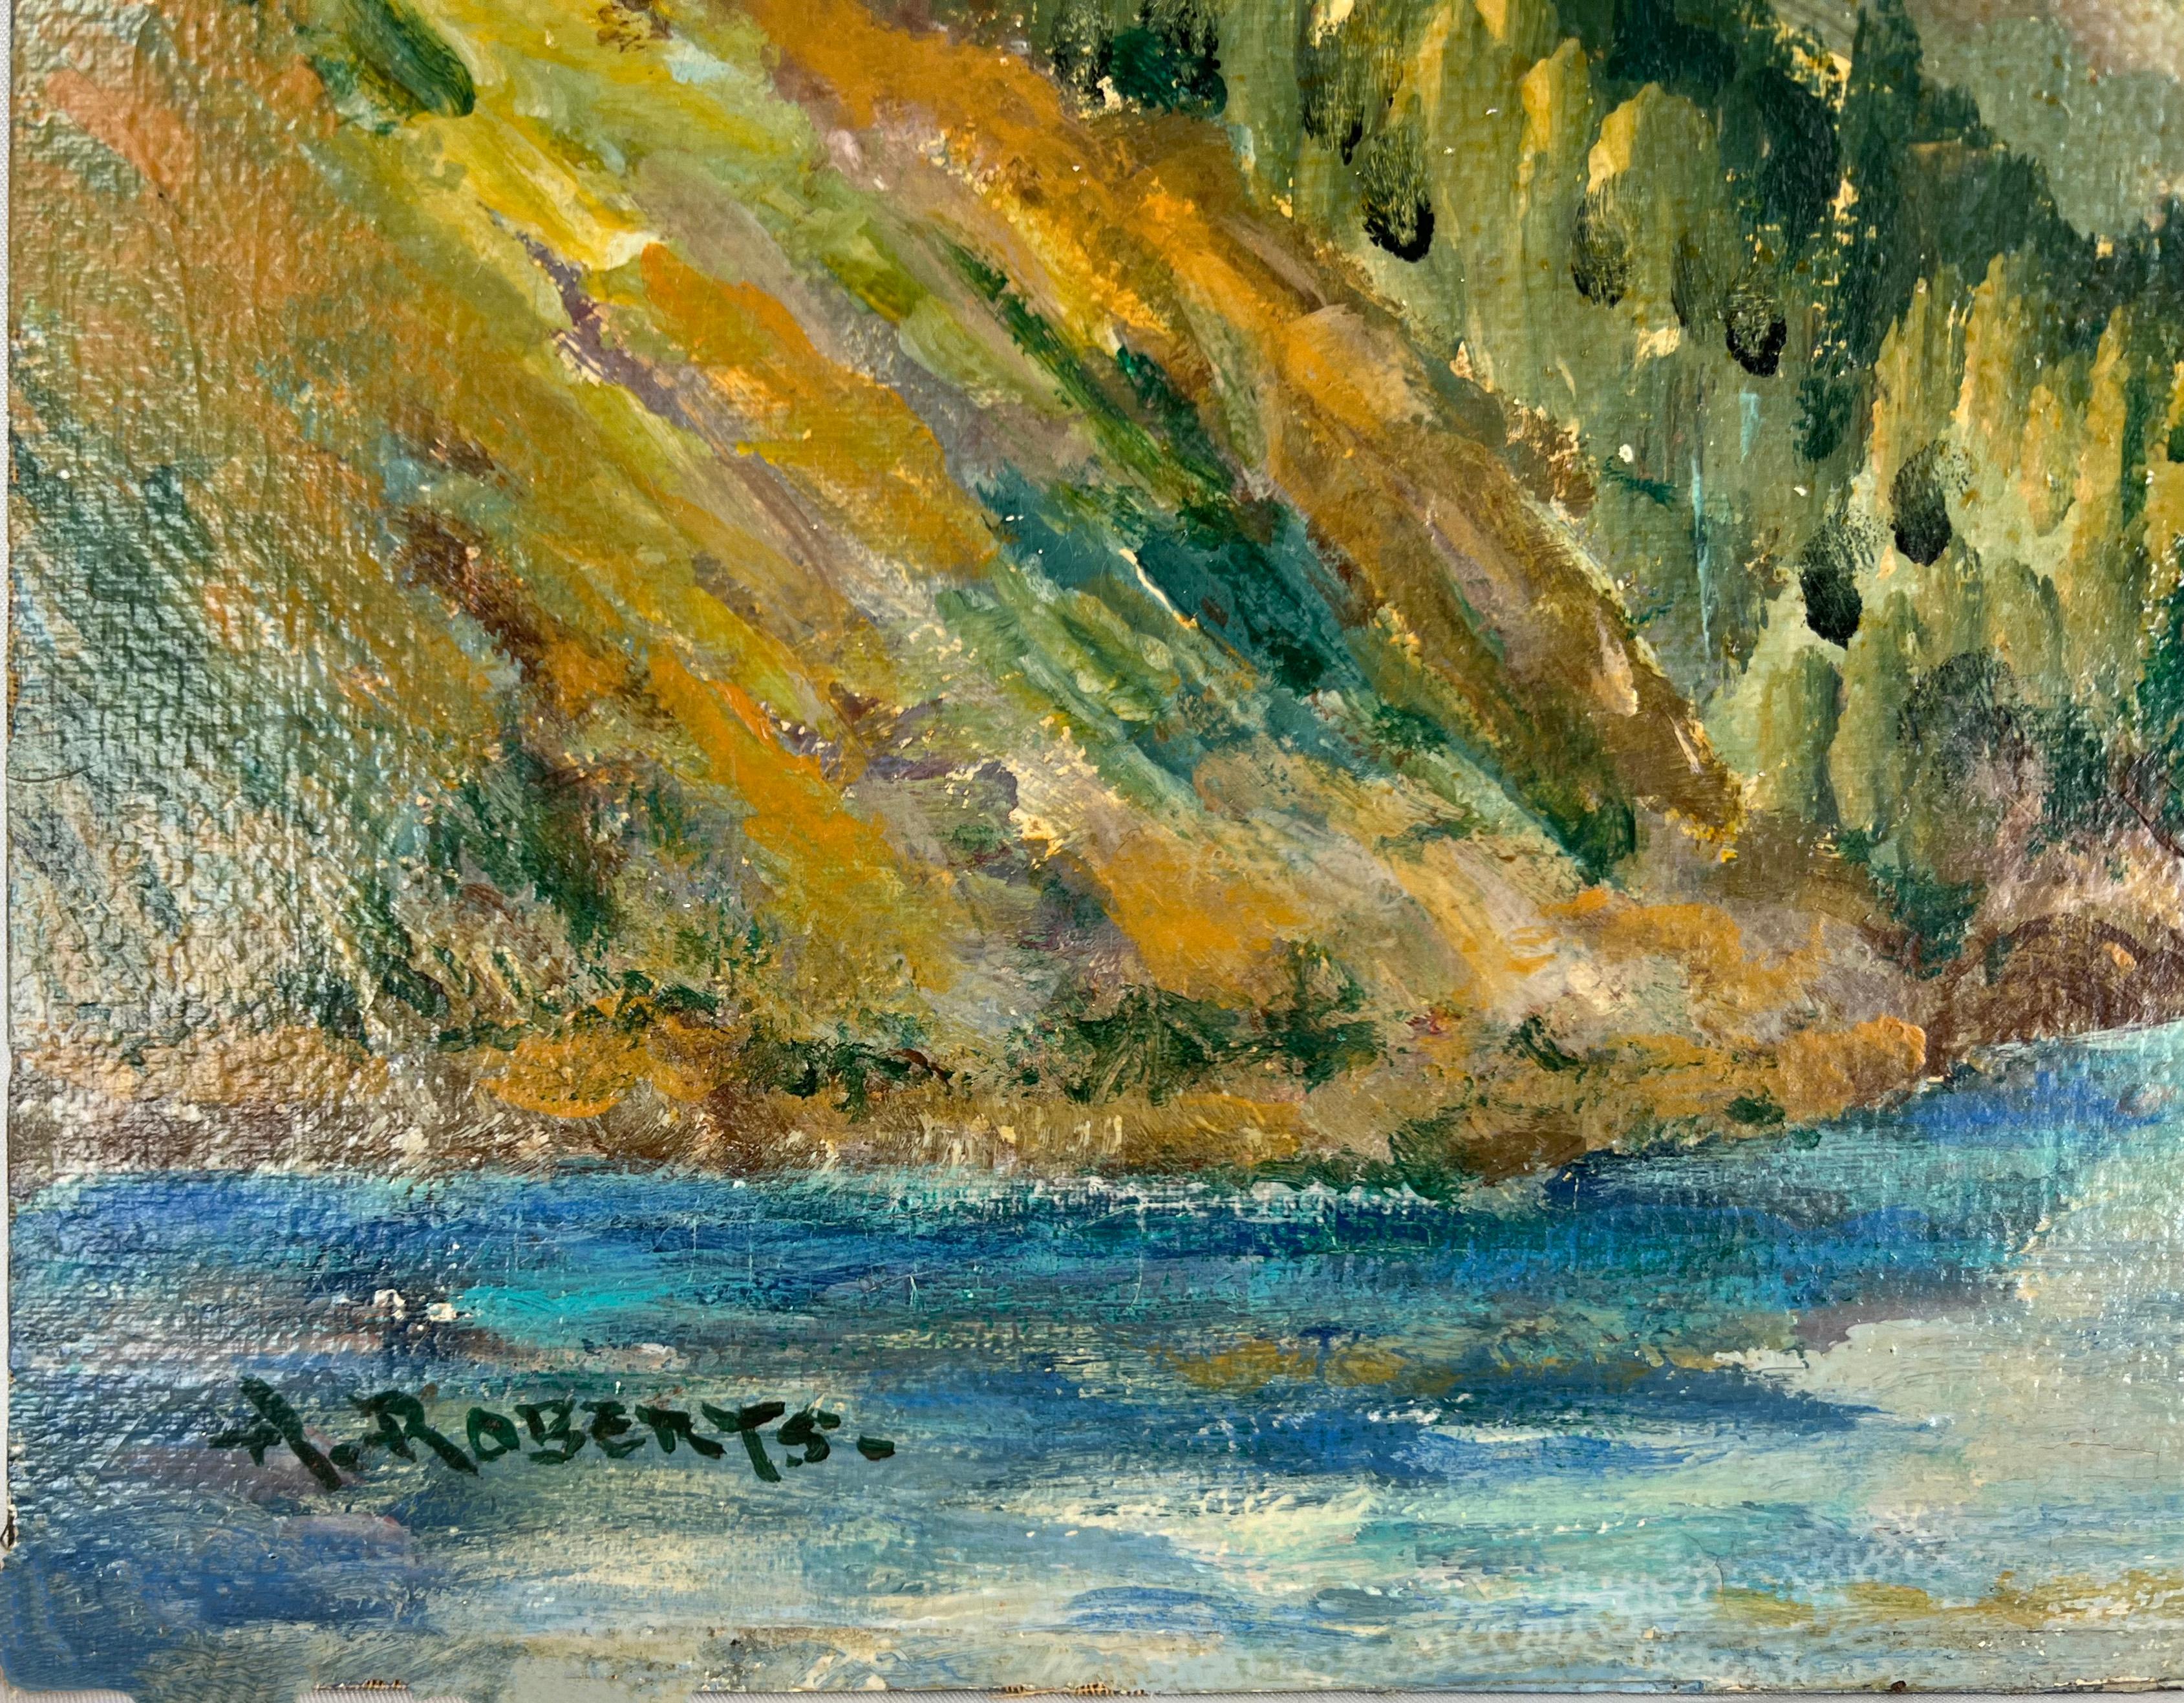 Sierra Peak California Mountain and Stream 1930er Jahre
Gemälde der kalifornischen Sierras aus den 1930er Jahren des südkalifornischen Künstlers Aaron Roberts (Amerikaner, 19.-20. Jh.). Frühlingslandschaft mit sanften Hügeln, Mohnblumen und einem